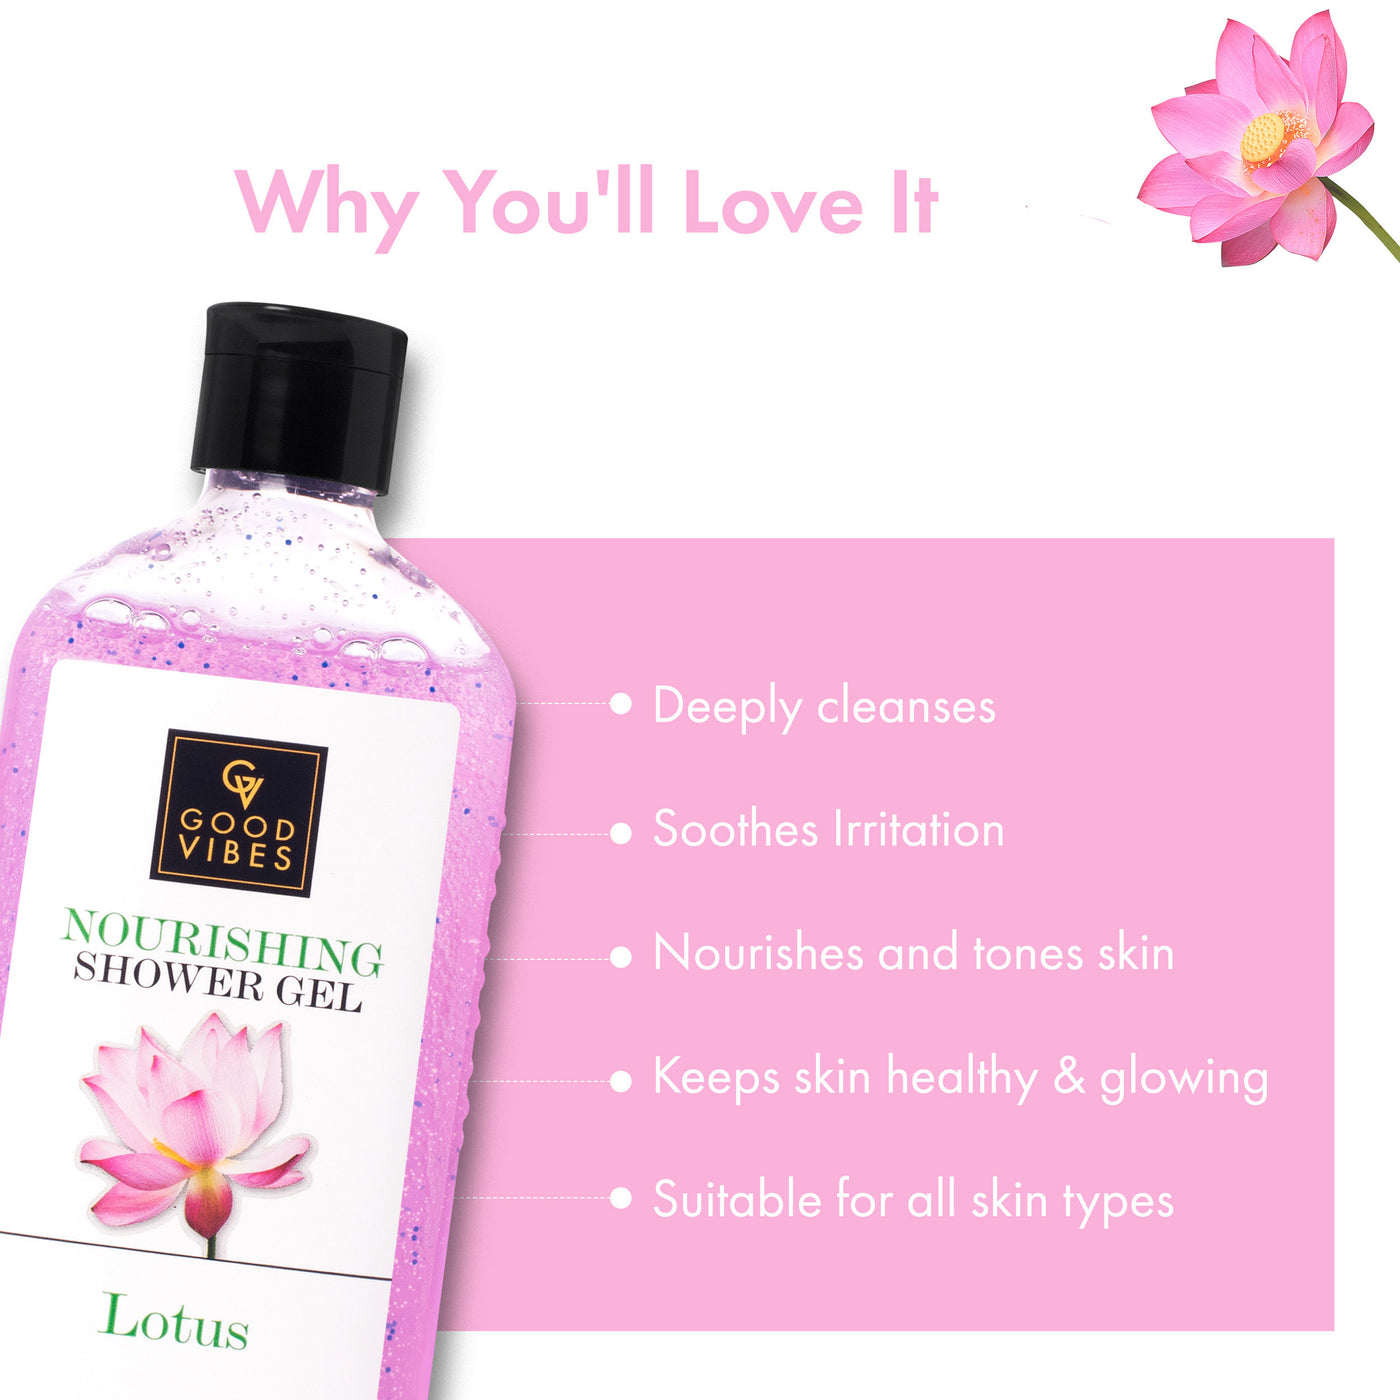 good-vibes-nourishing-shower-gel-lotus-300-ml-3